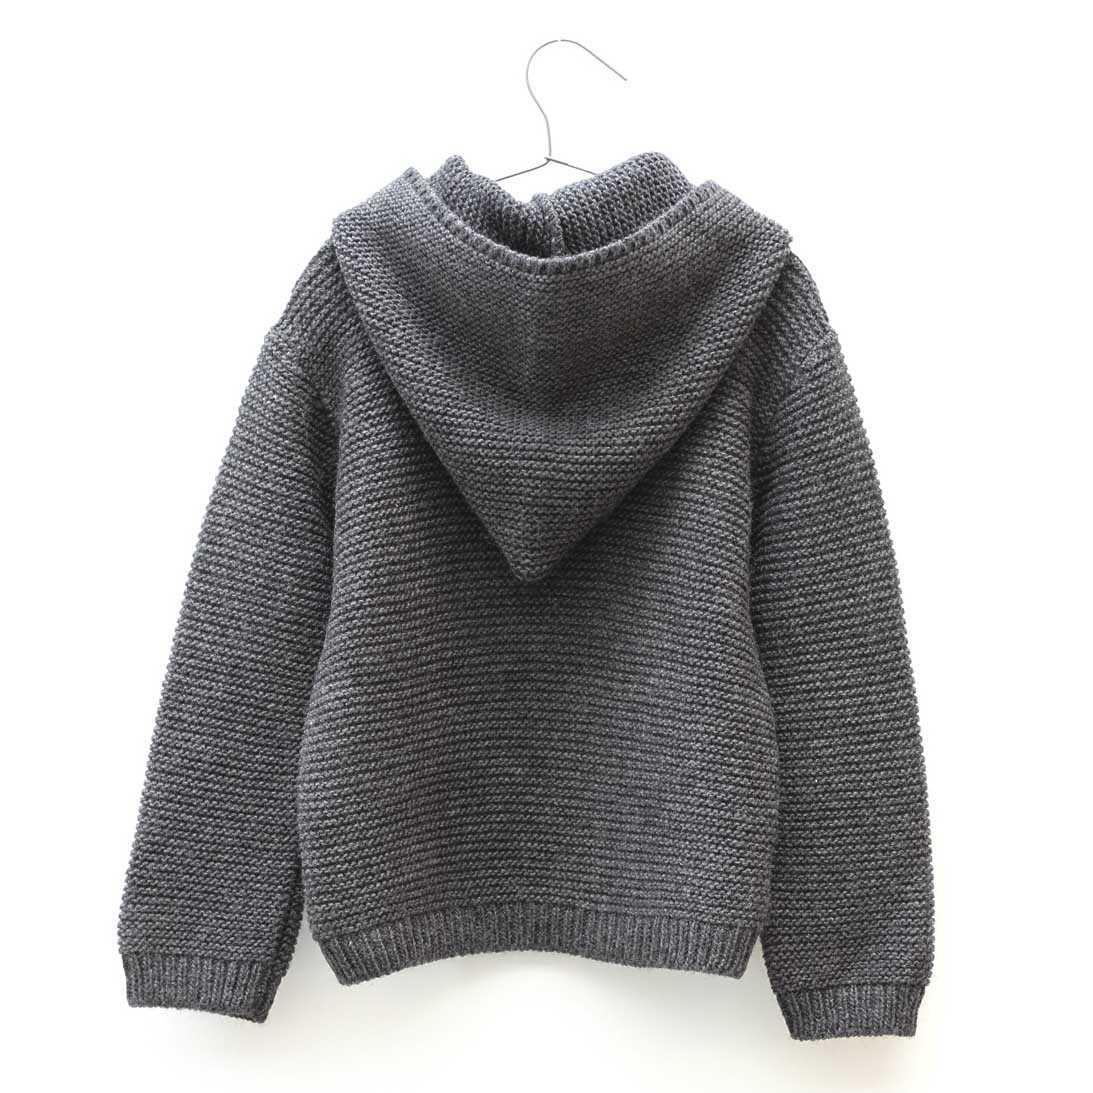 Вязаный свитер или пуловер для женщин, джемпер схема вязания, пуловер из толстой пряжи спицами